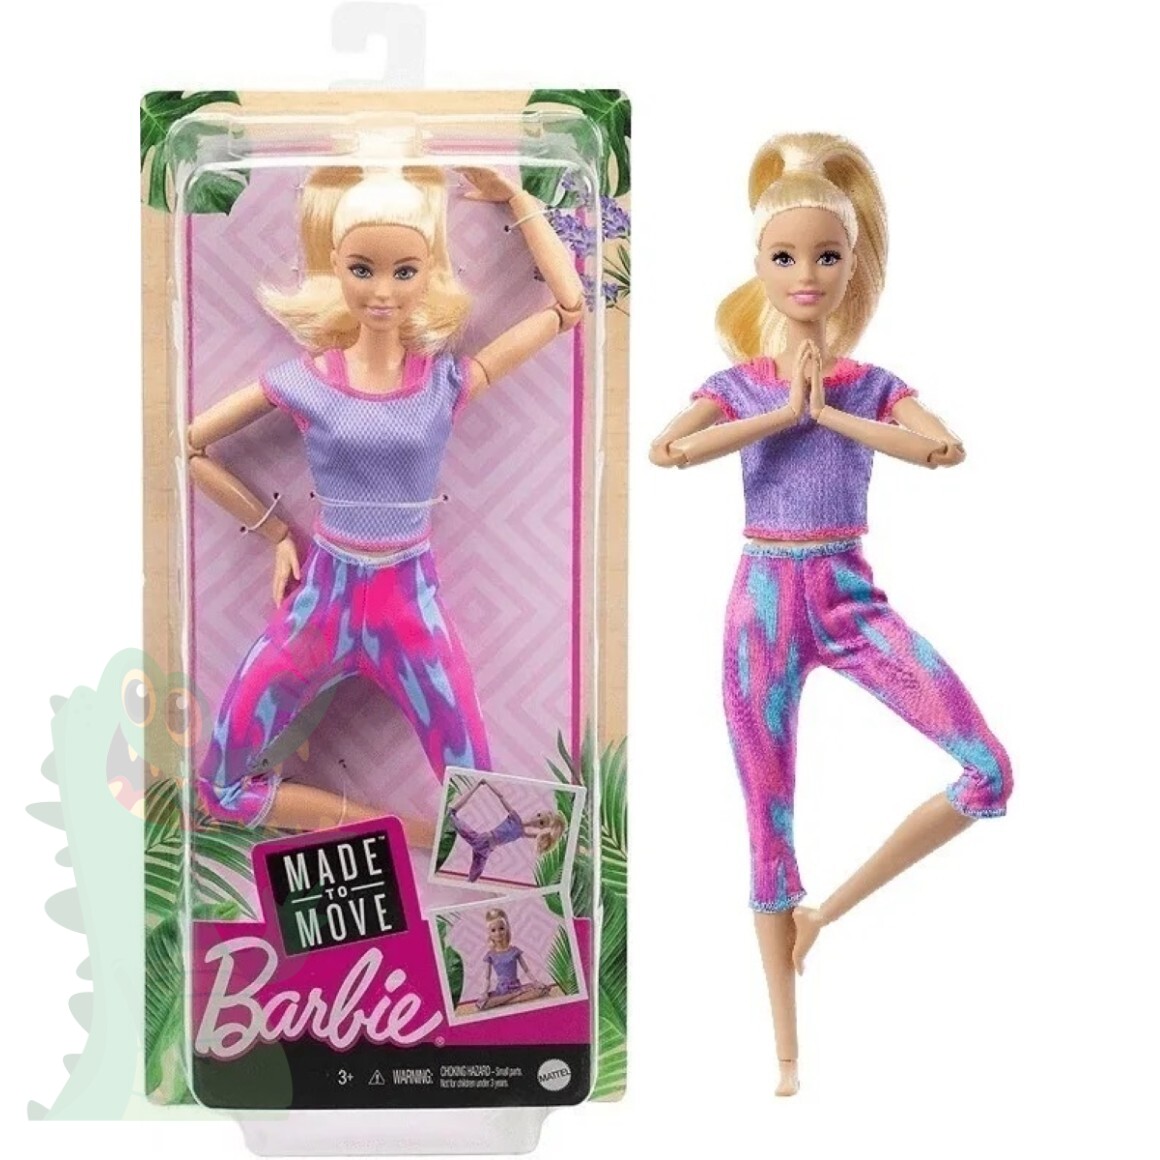 Jogo Barbie e suas Irmãs: Resgate de Cachorrinhos PlayStation 3